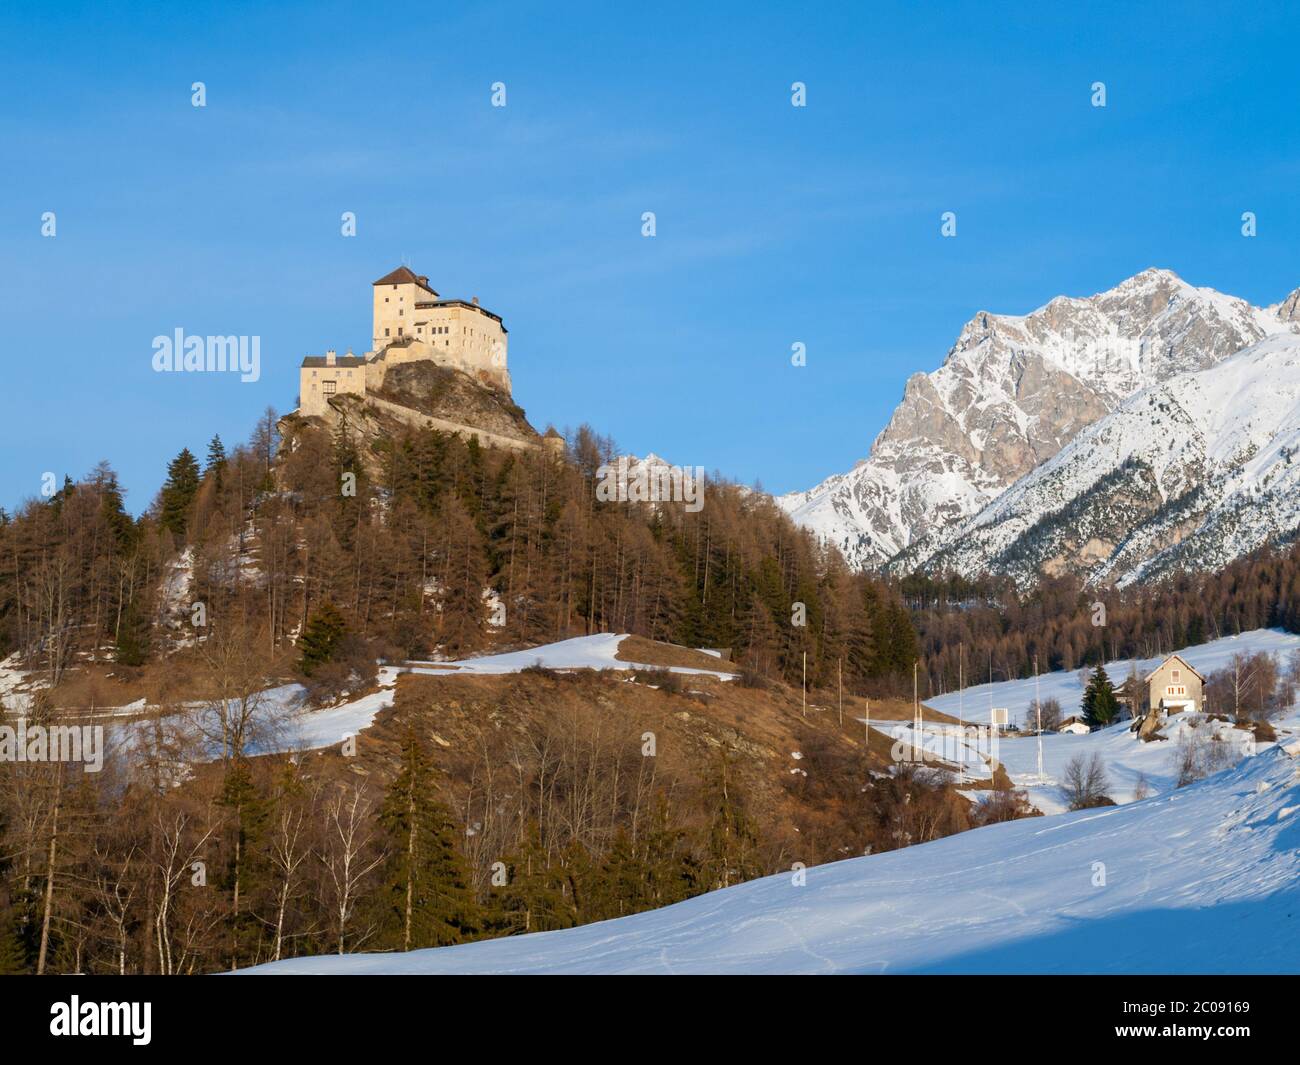 Tarasp Castle - fortified mountain castle in Swiss Alps, Engadin, Switzerland. Stock Photo